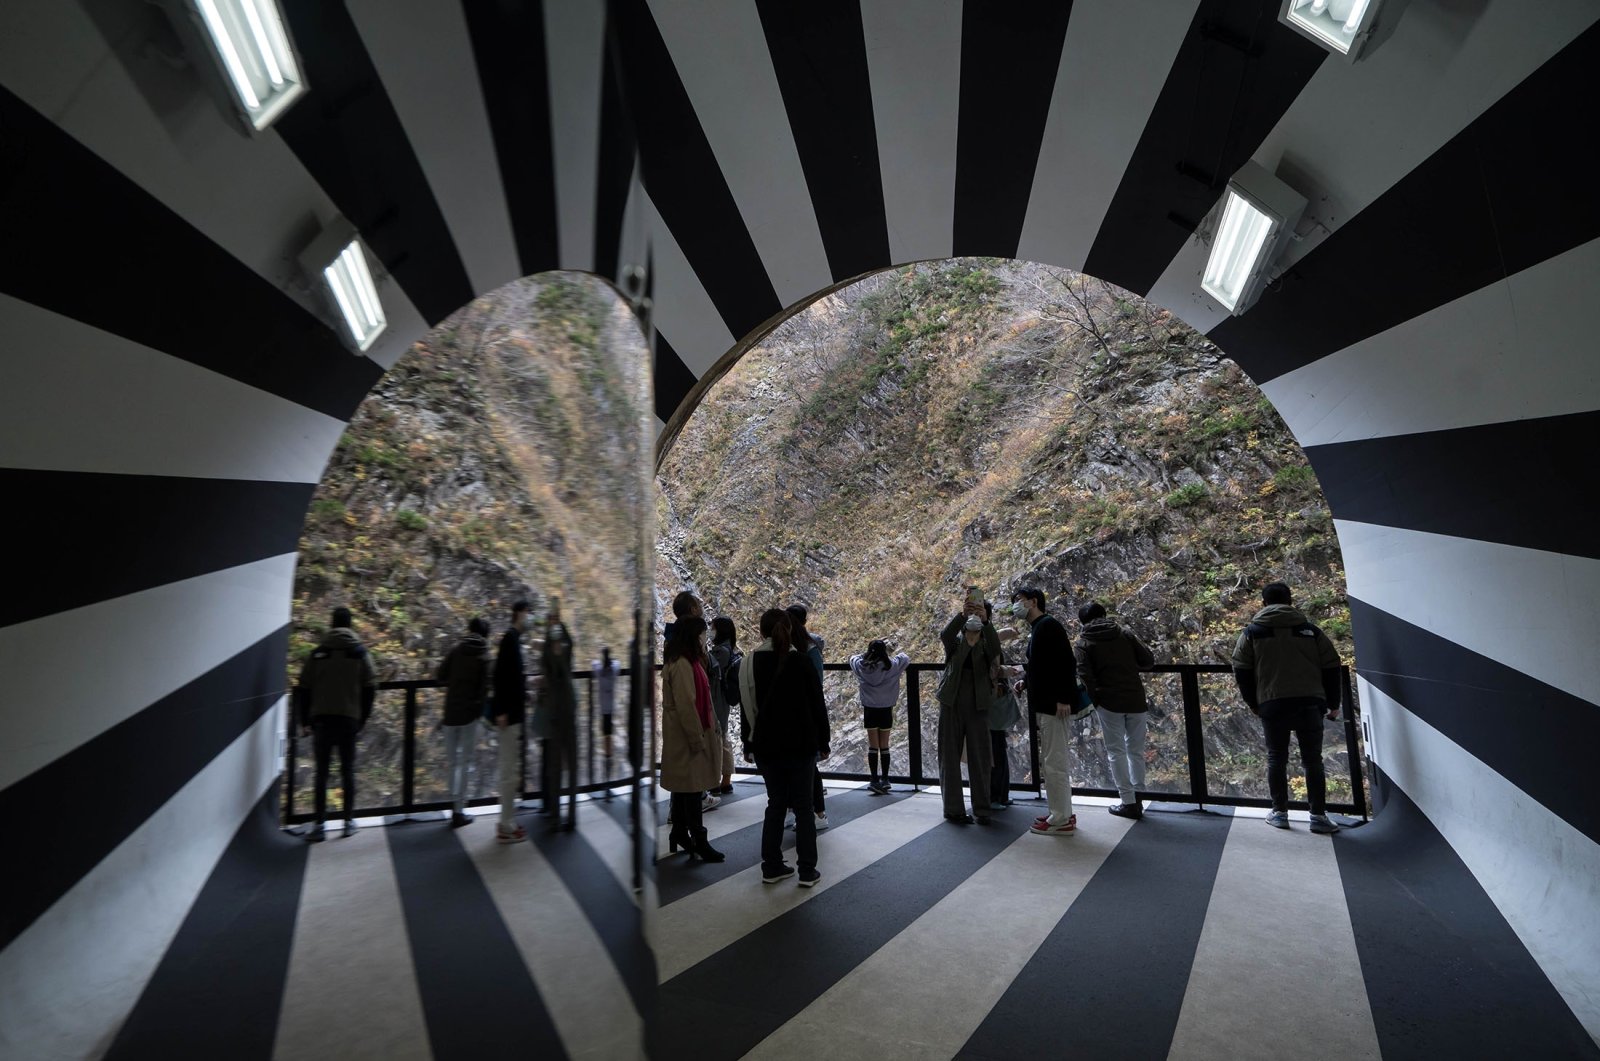 Melengkungkan pandangan Anda: Karya seni Jepang ‘Tunnel of Light’